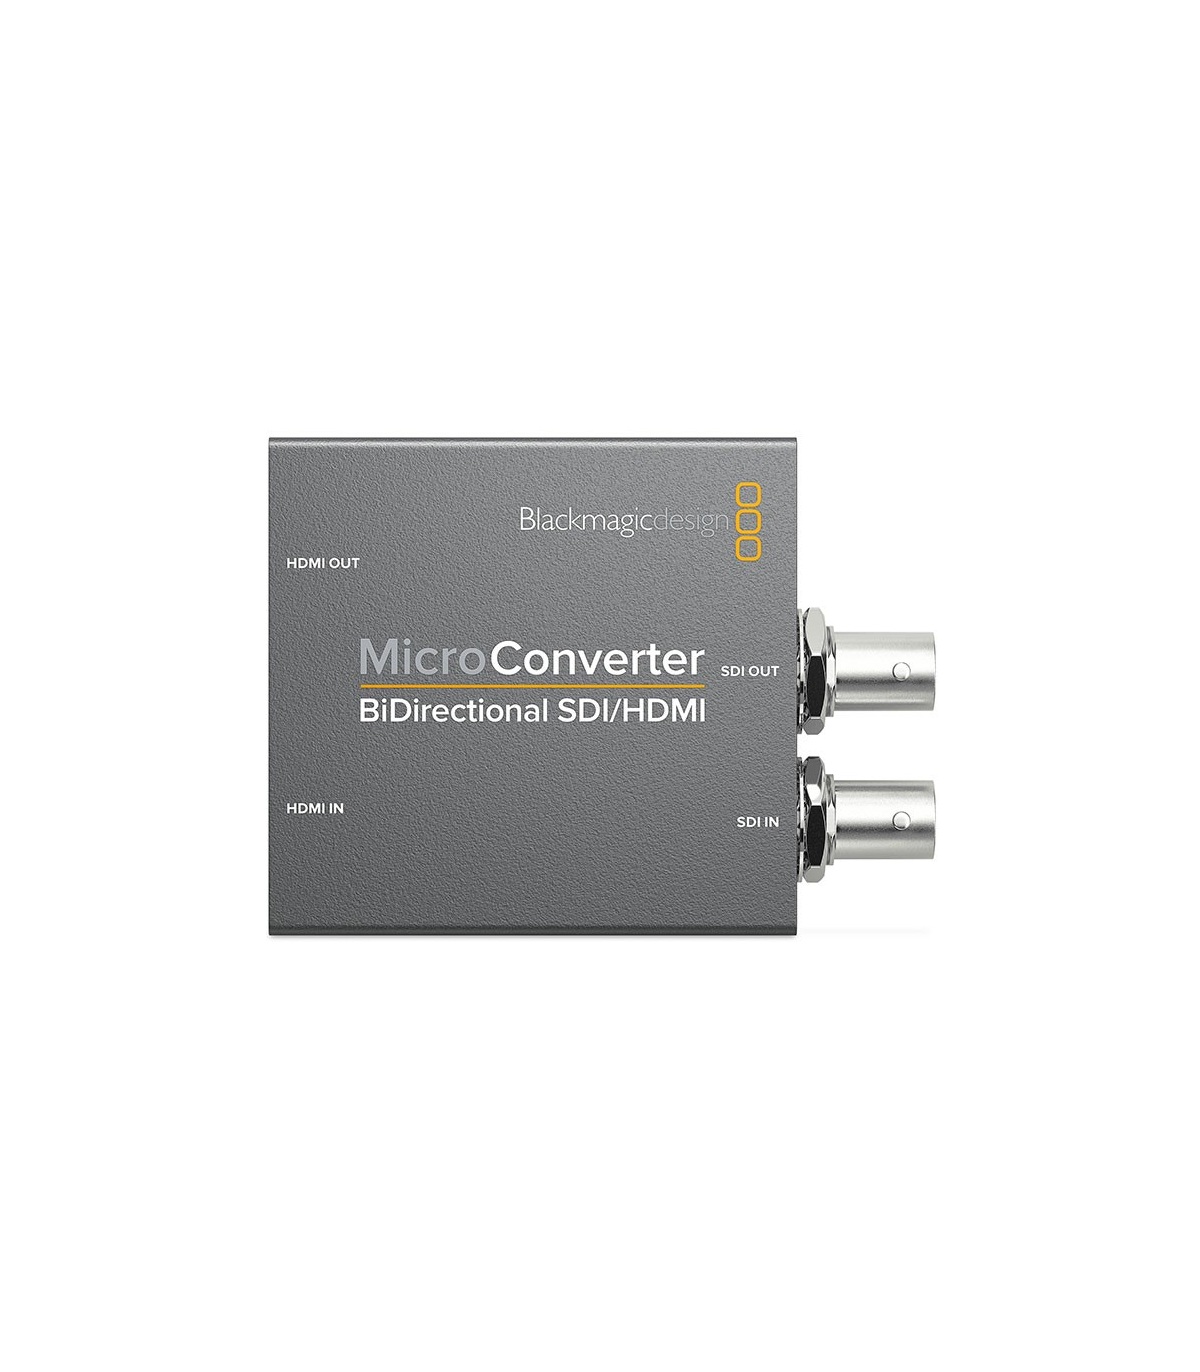 میکرو کانورتور بلک مجیک Blackmagic Design Micro Converter BiDirectional SDI/HDMI